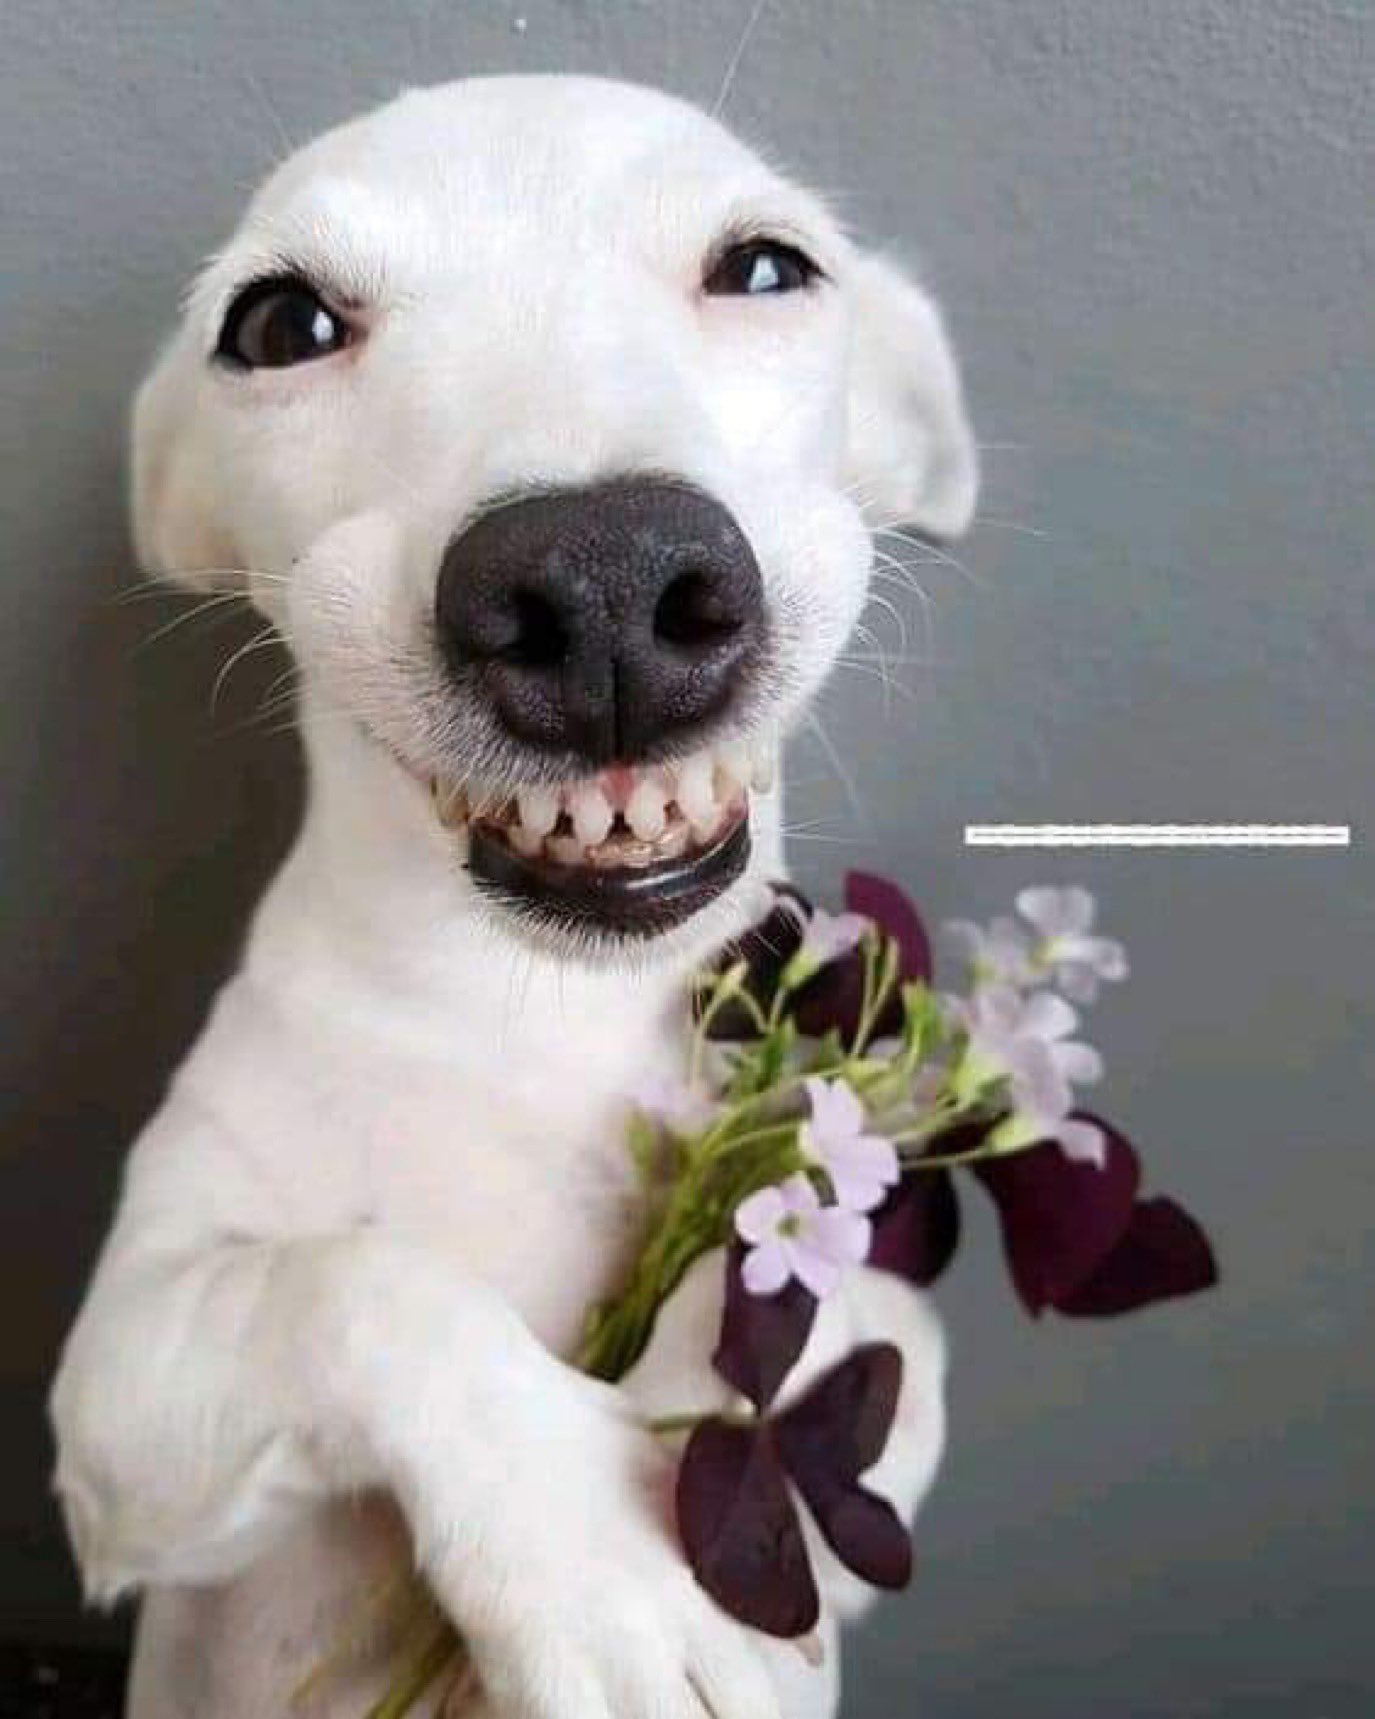 Hãy xem bức ảnh chó cười đáng yêu này để cảm thấy vui vẻ và thư giãn hơn trong ngày của bạn. Nụ cười của chú chó này chắc chắn sẽ nâng cao tinh thần của bạn lên rất nhiều.